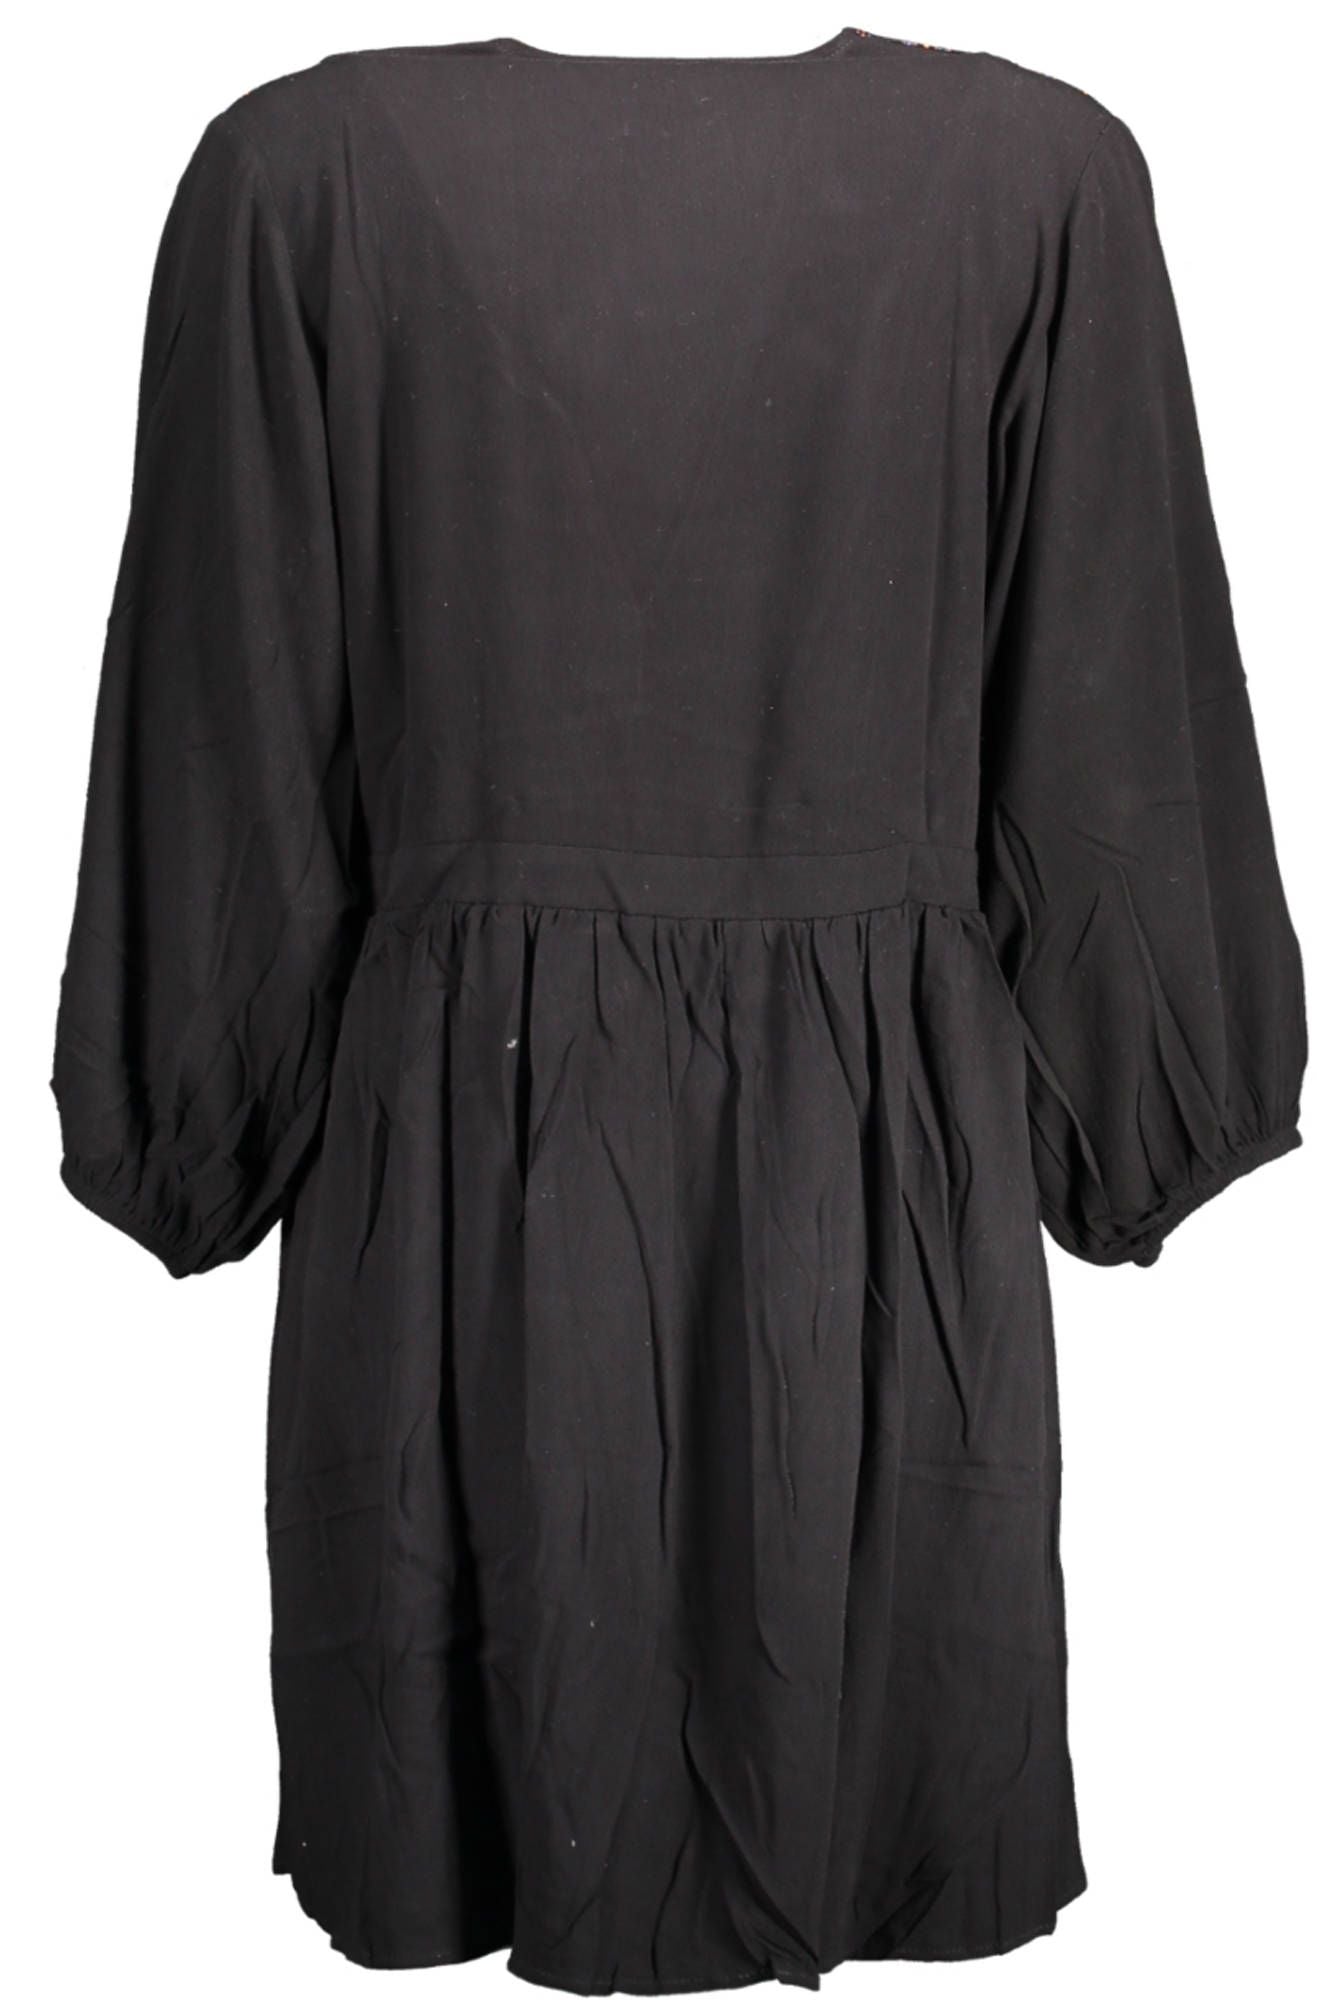 Elegant Black Viscose Dress with Contrasting Details